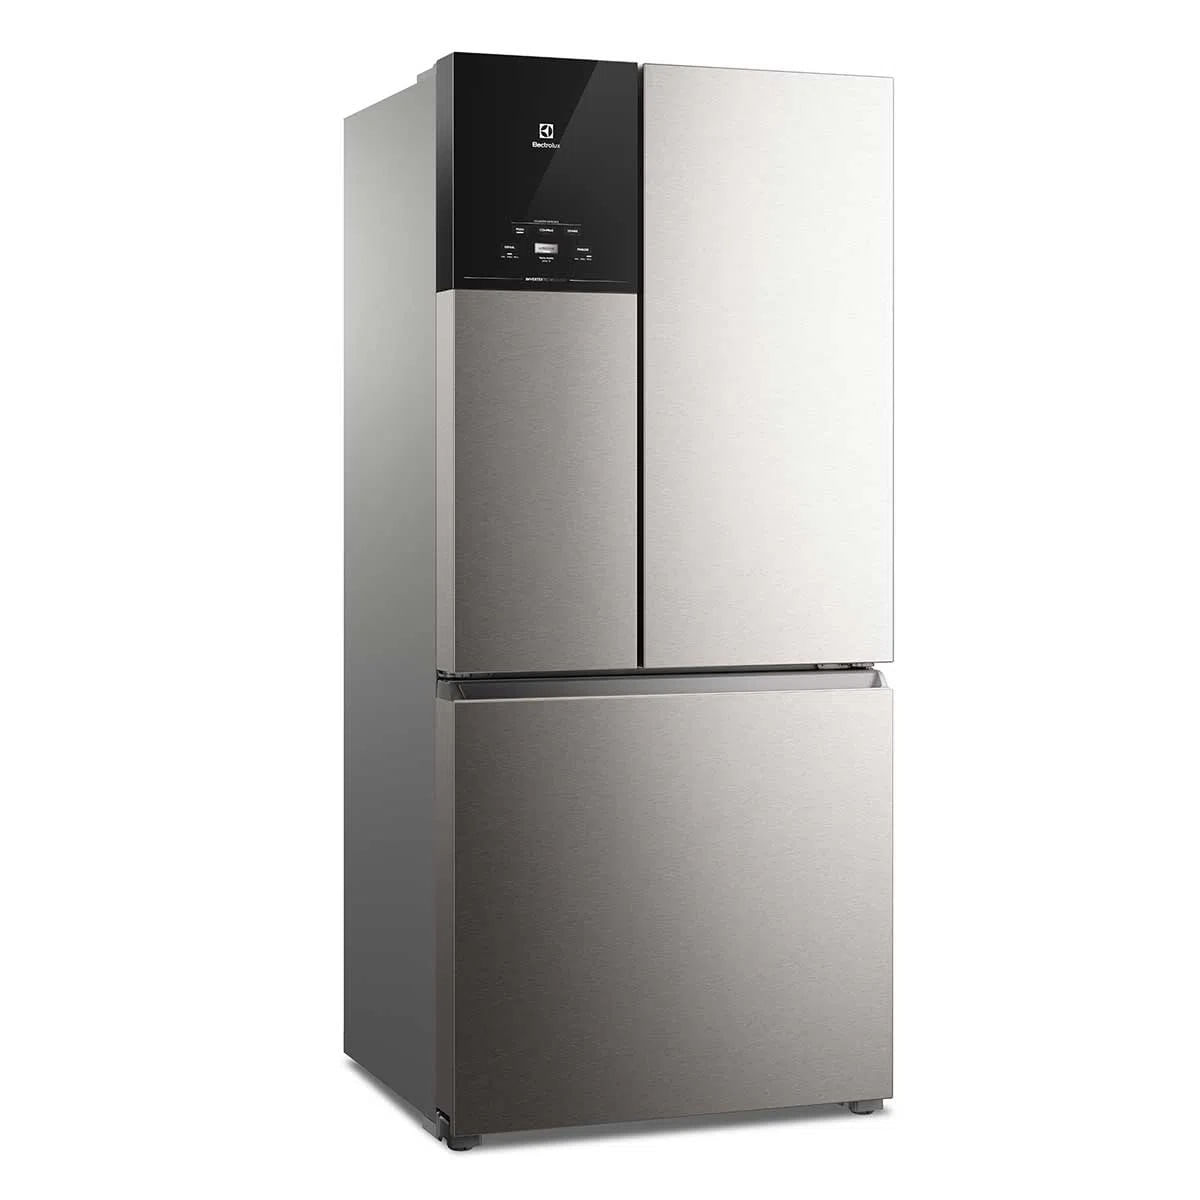 geladeira-electrolux-3-portas-inverter-com-autosense-efficient-im8s-ff3p-590l-x-110v-1.jpg